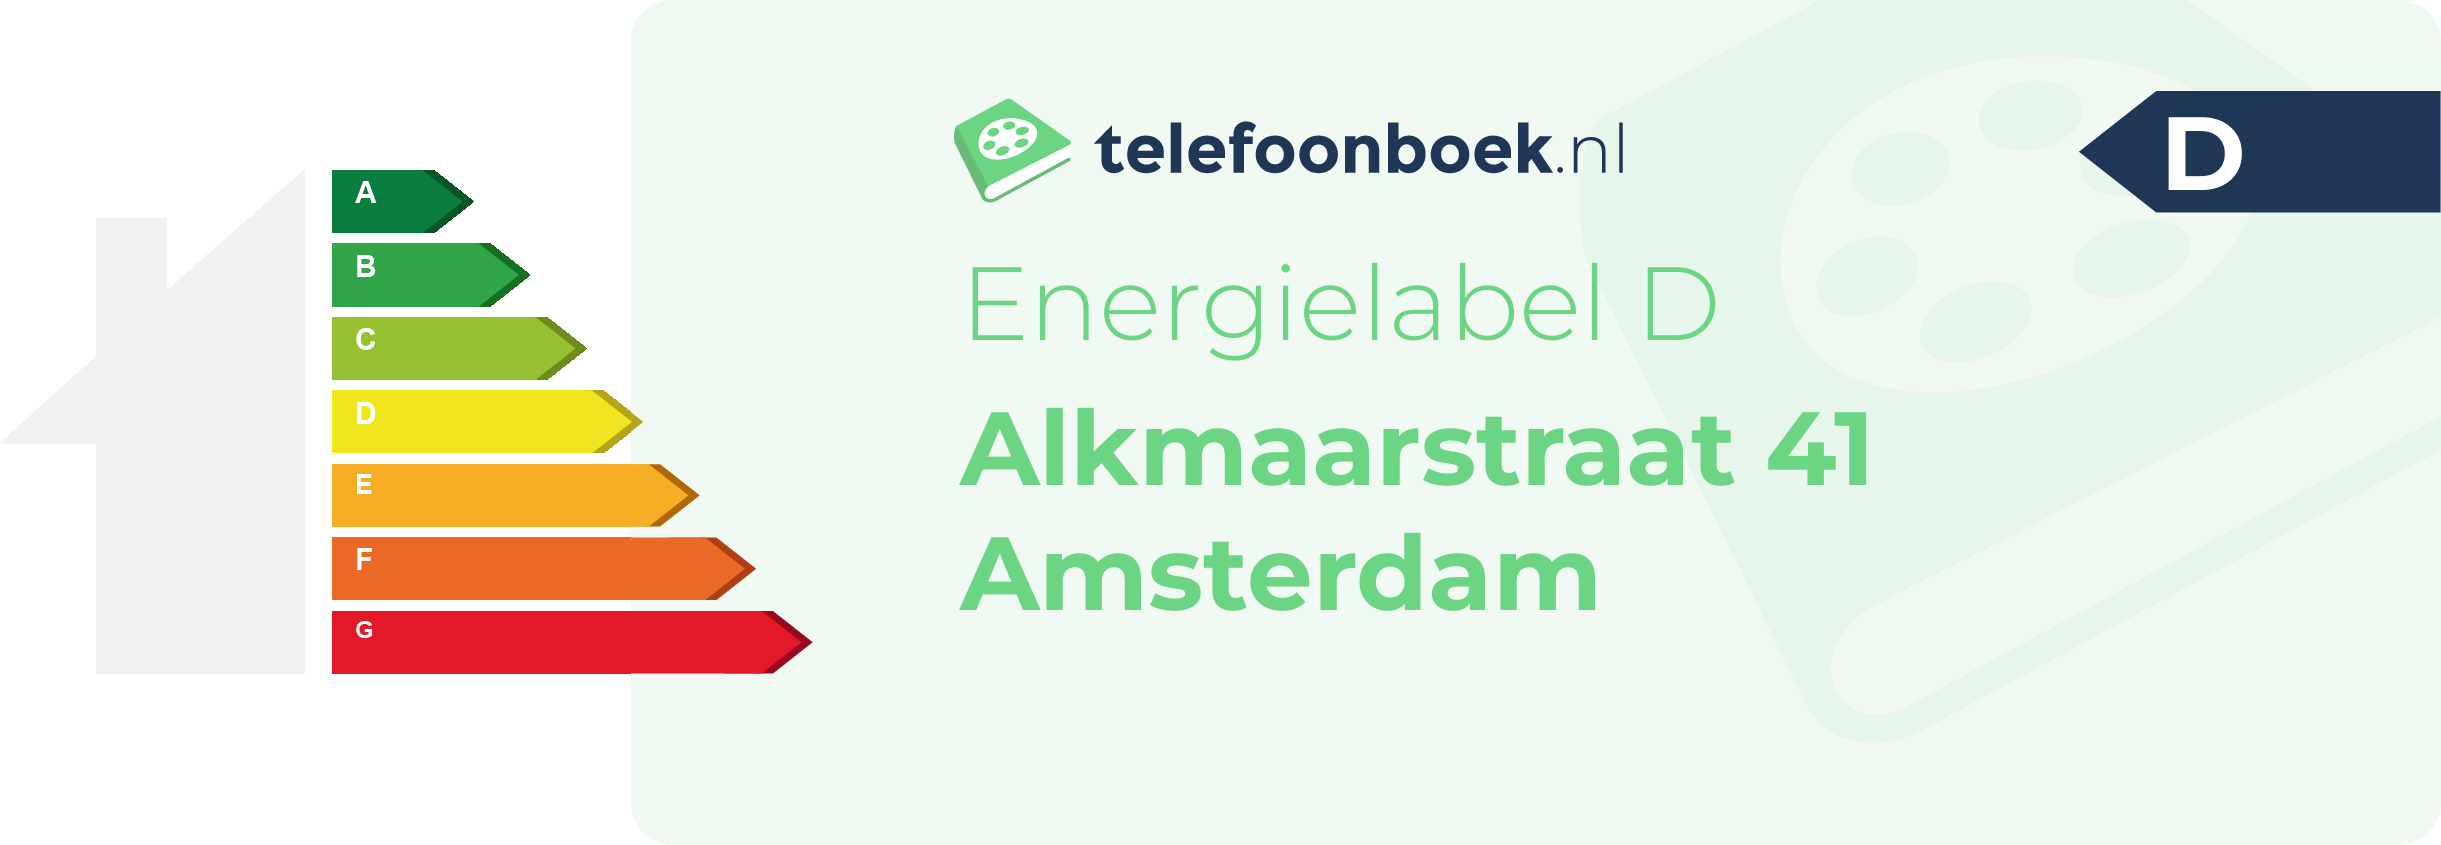 Energielabel Alkmaarstraat 41 Amsterdam